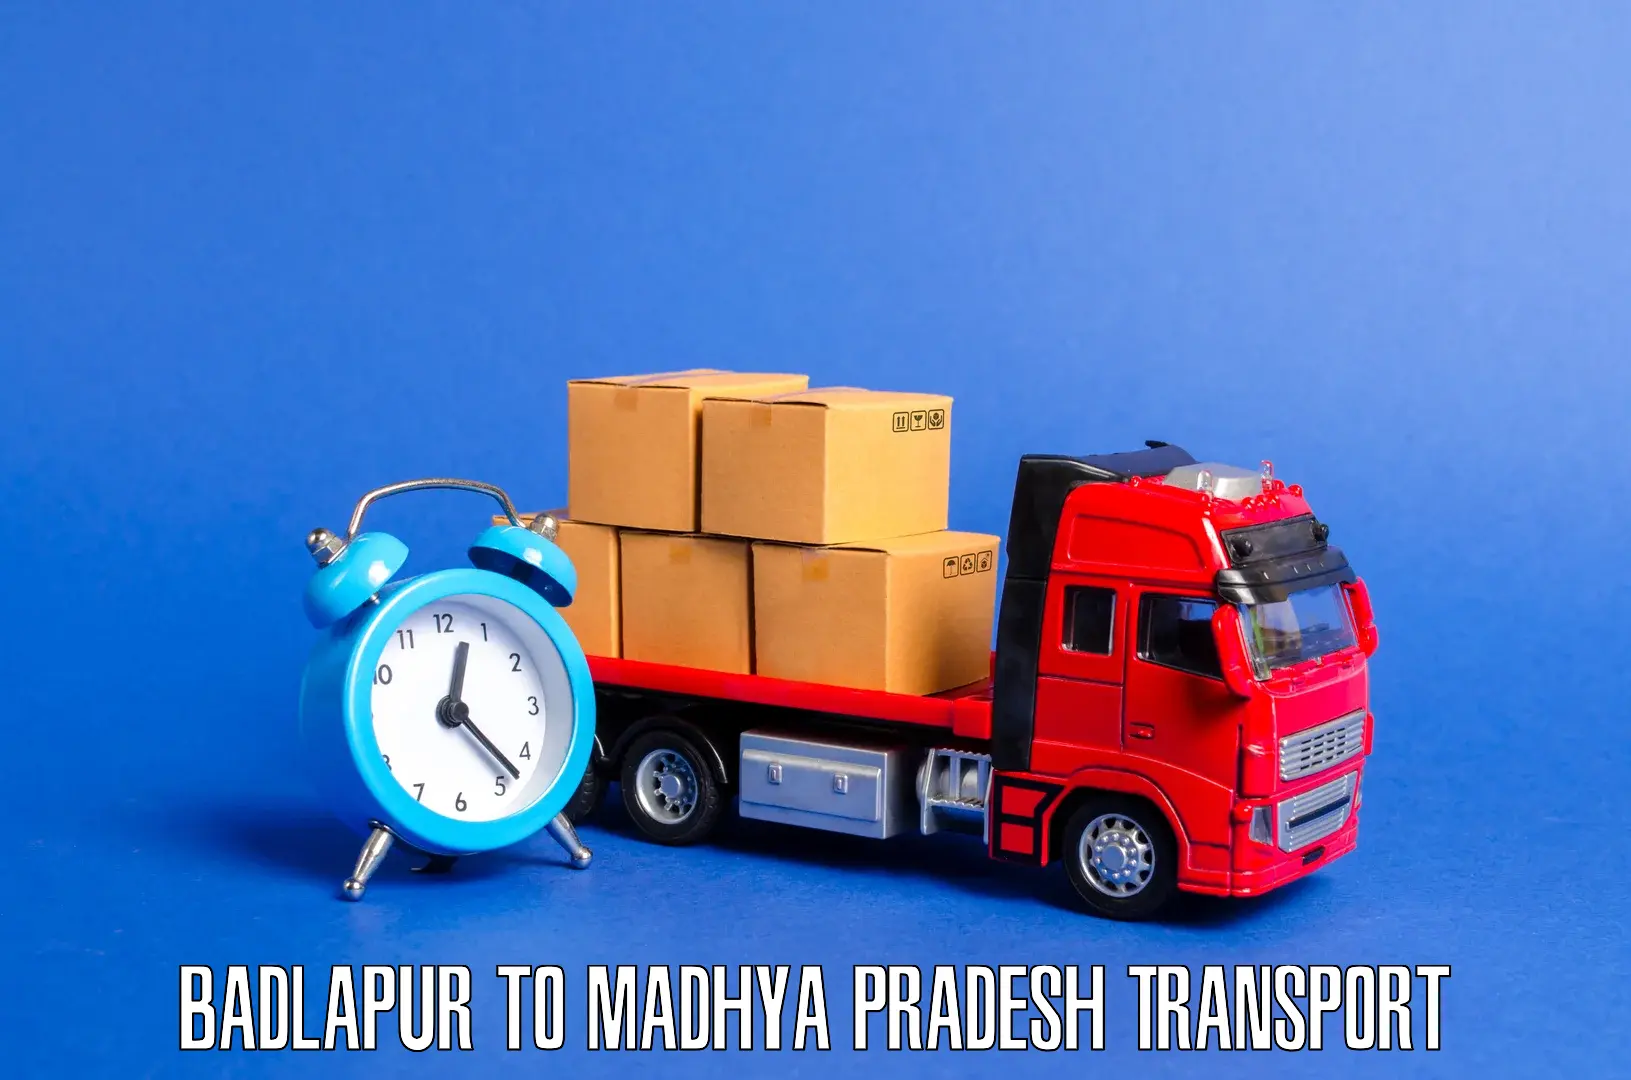 Nationwide transport services Badlapur to Sohagi